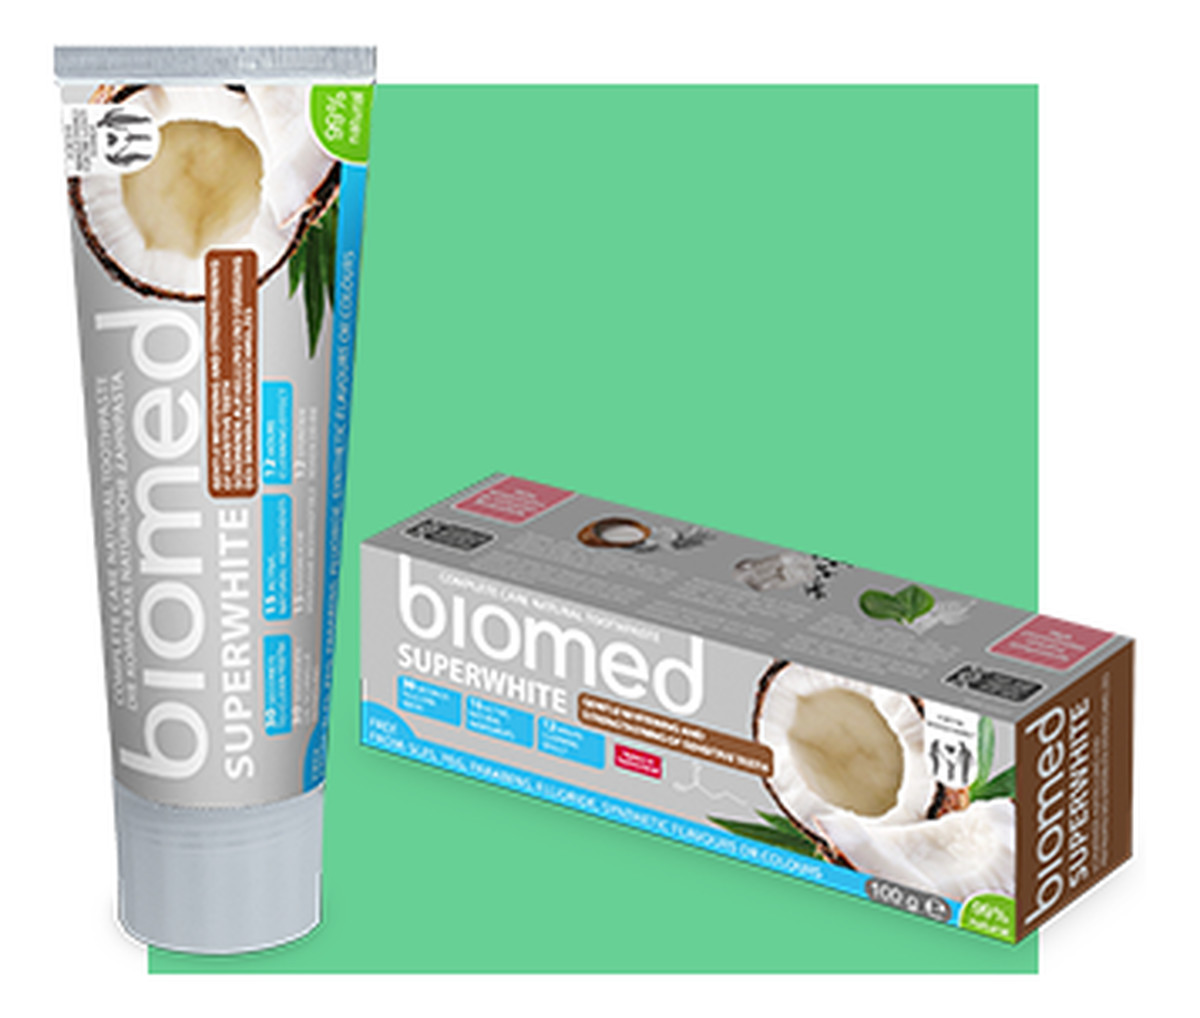 Biomed Superwhite Wybielająca Pasta Do Zębów Do Remineralizacji i Wzmocnienia Szkliwa